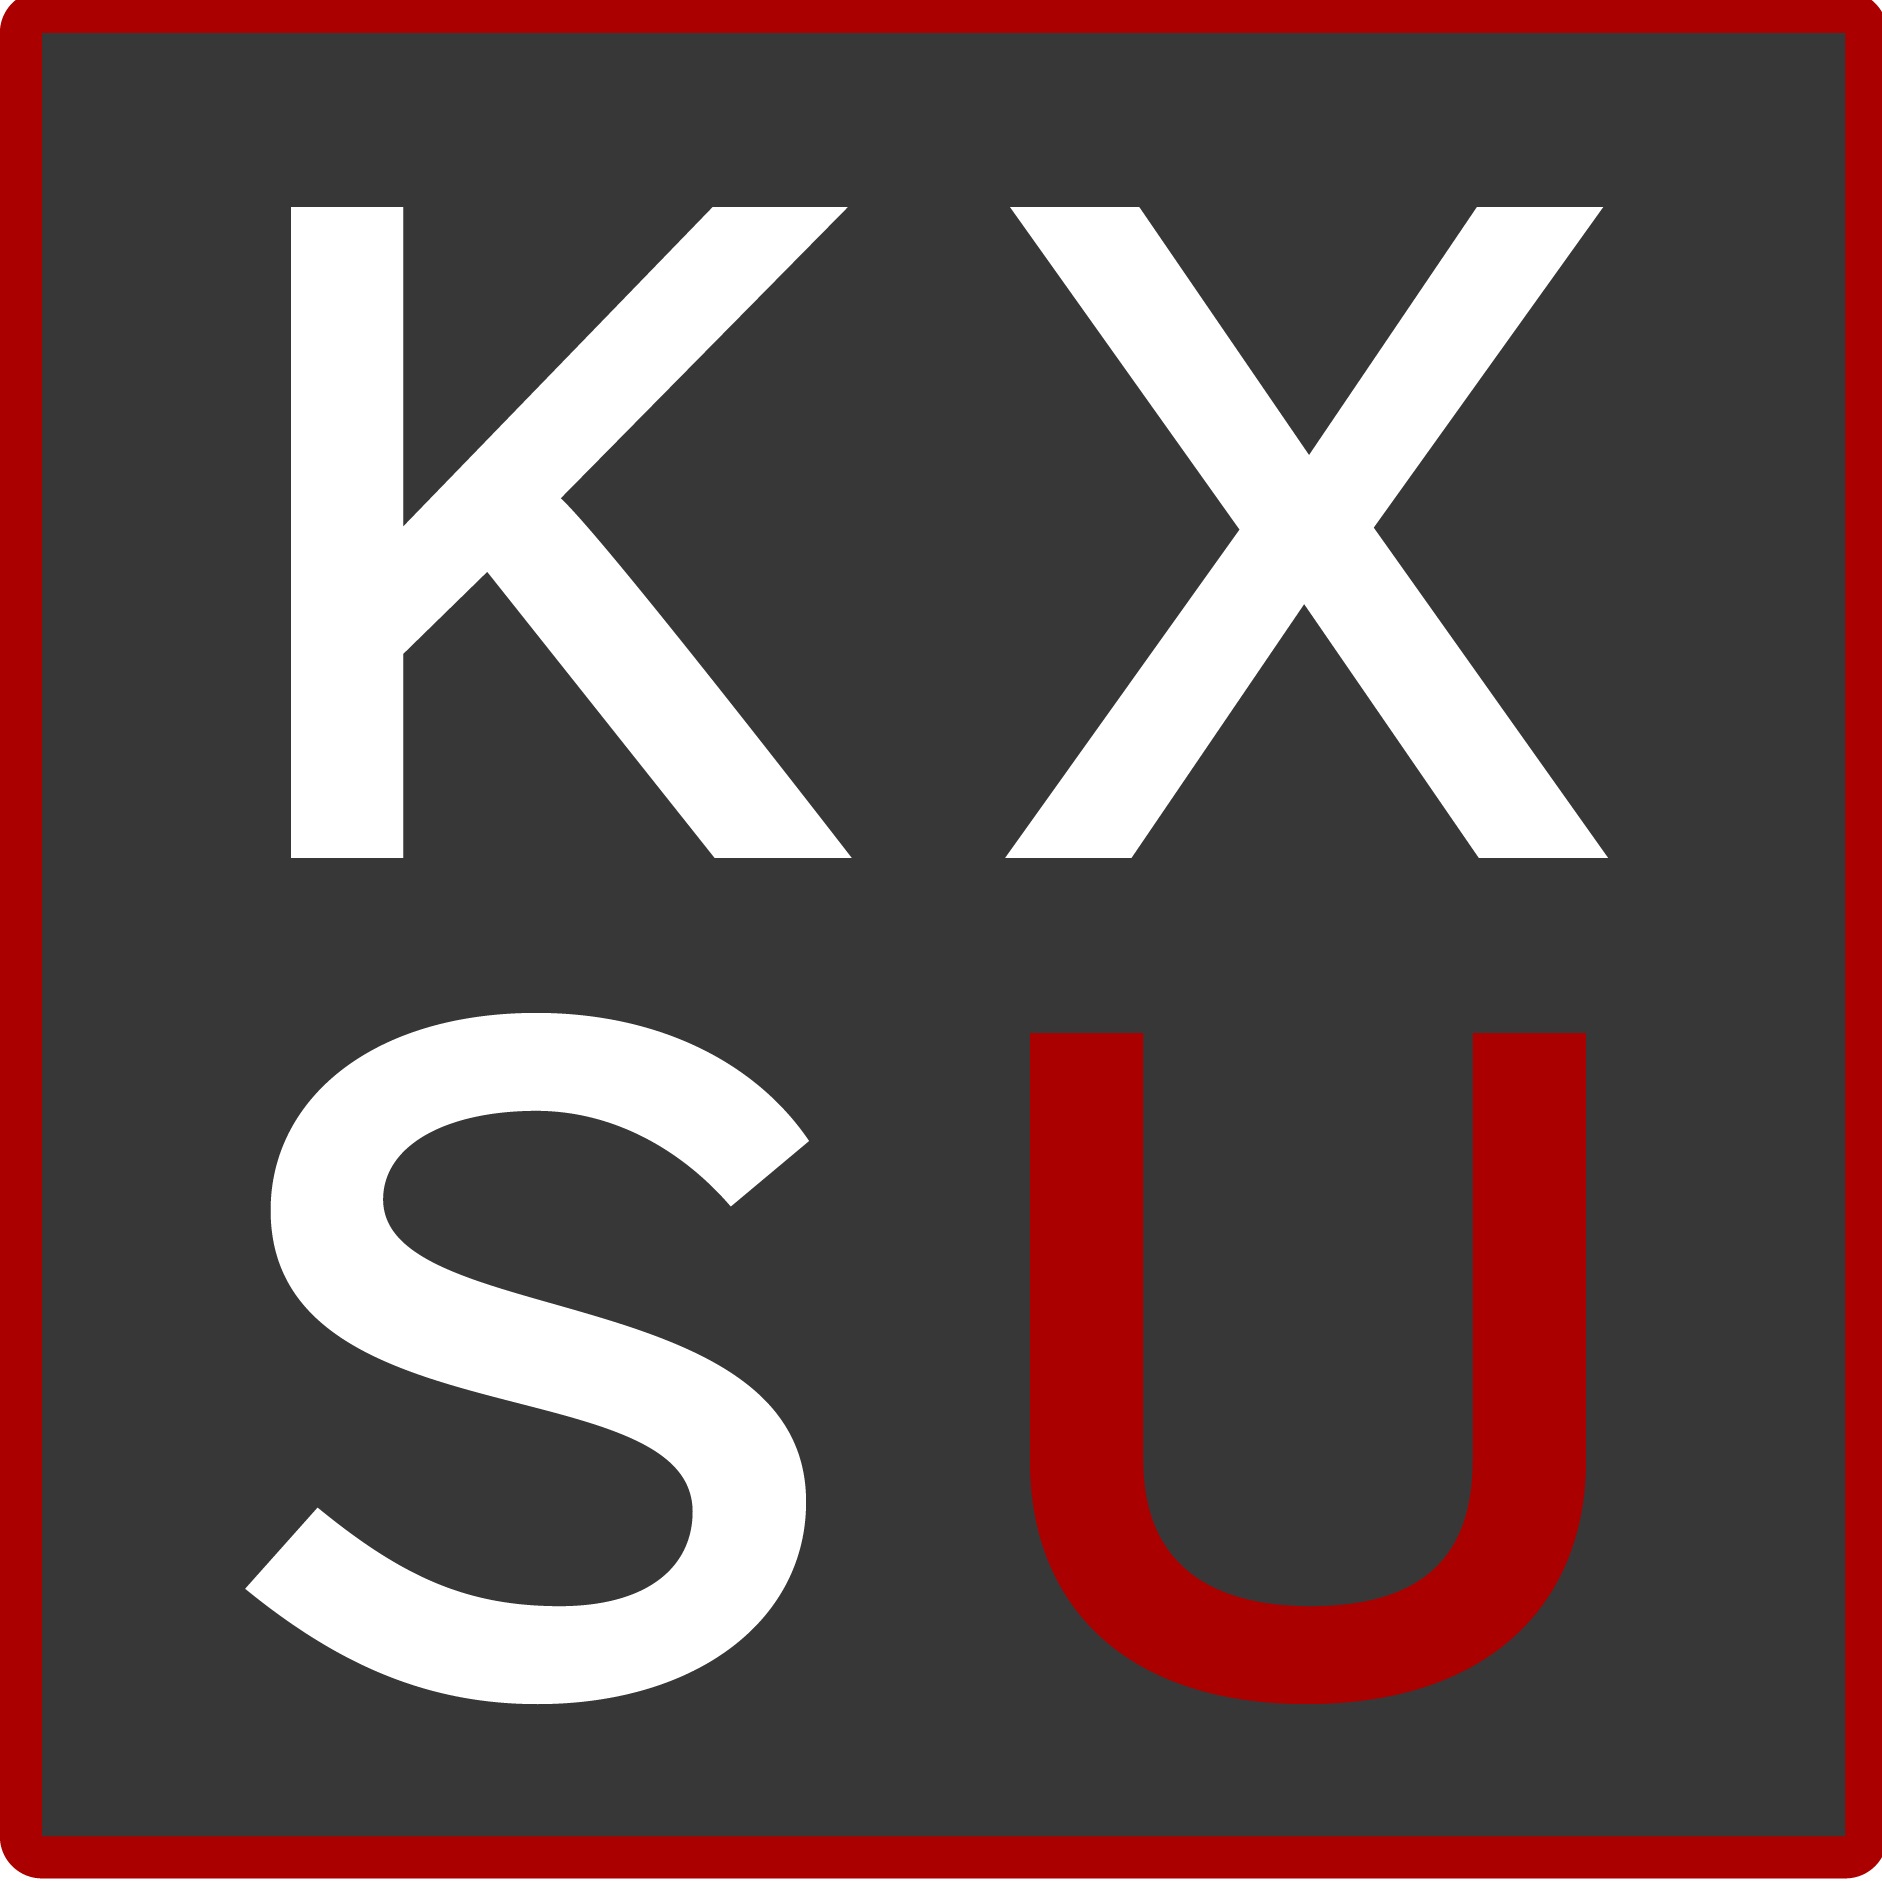 KXSU 102.1 FM